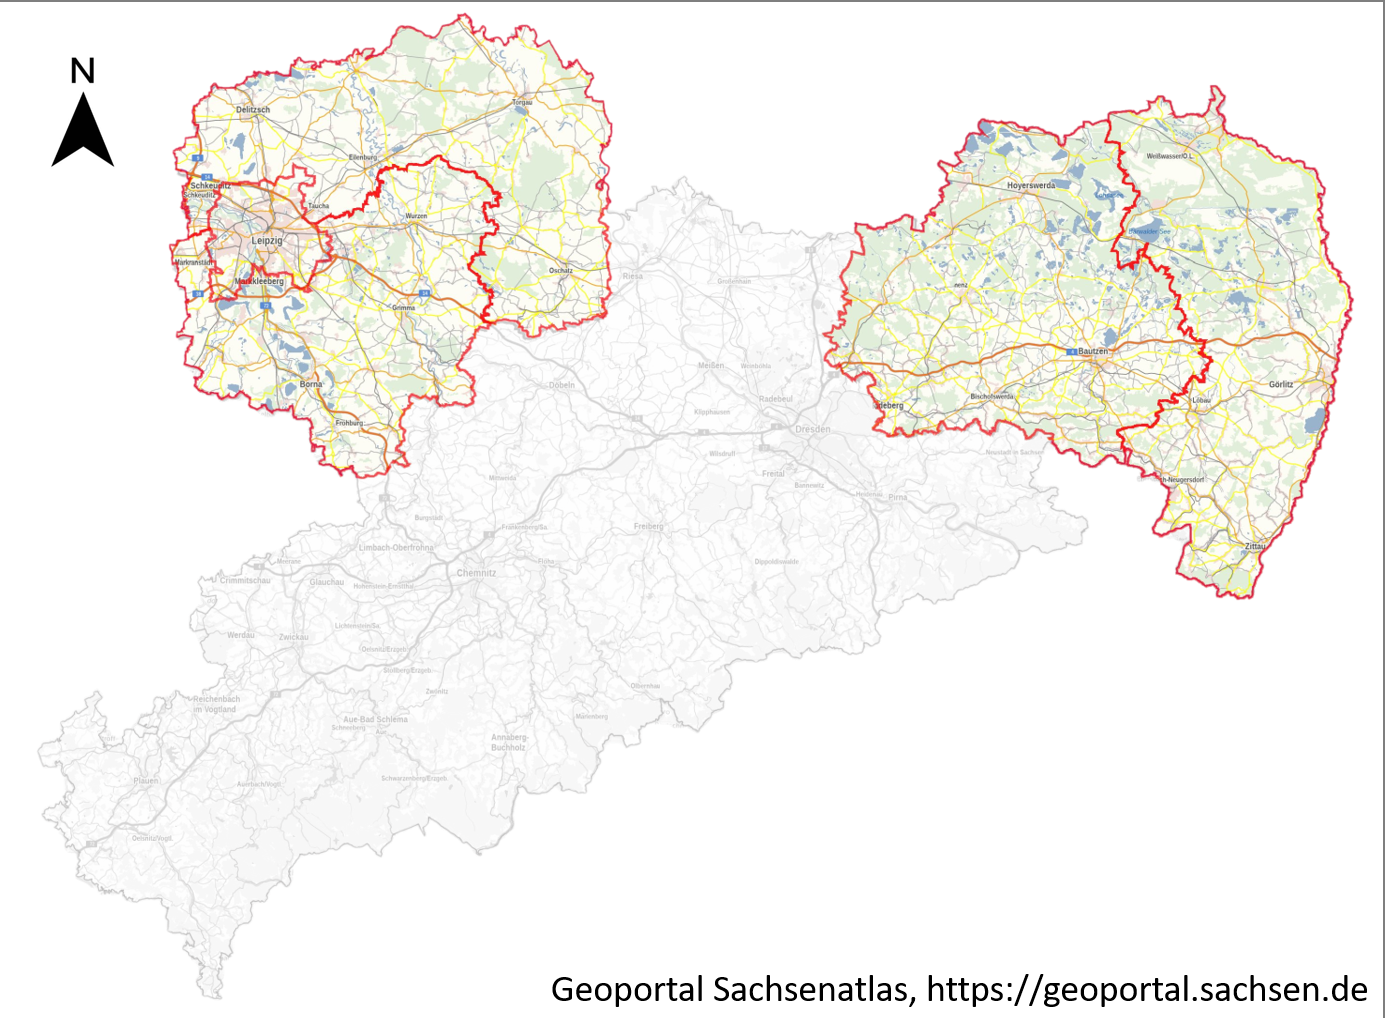 Karte des Frfeistaates Sachsen: Im Osten sind die beiden Landkreise Bautzen und Görlitz sowie im Nordwesten die Landkreise Nordsachsen, Leipzig und die Stadt Leipzig hervorgehoben. Restliche Sachsenkarte ausgegraut.